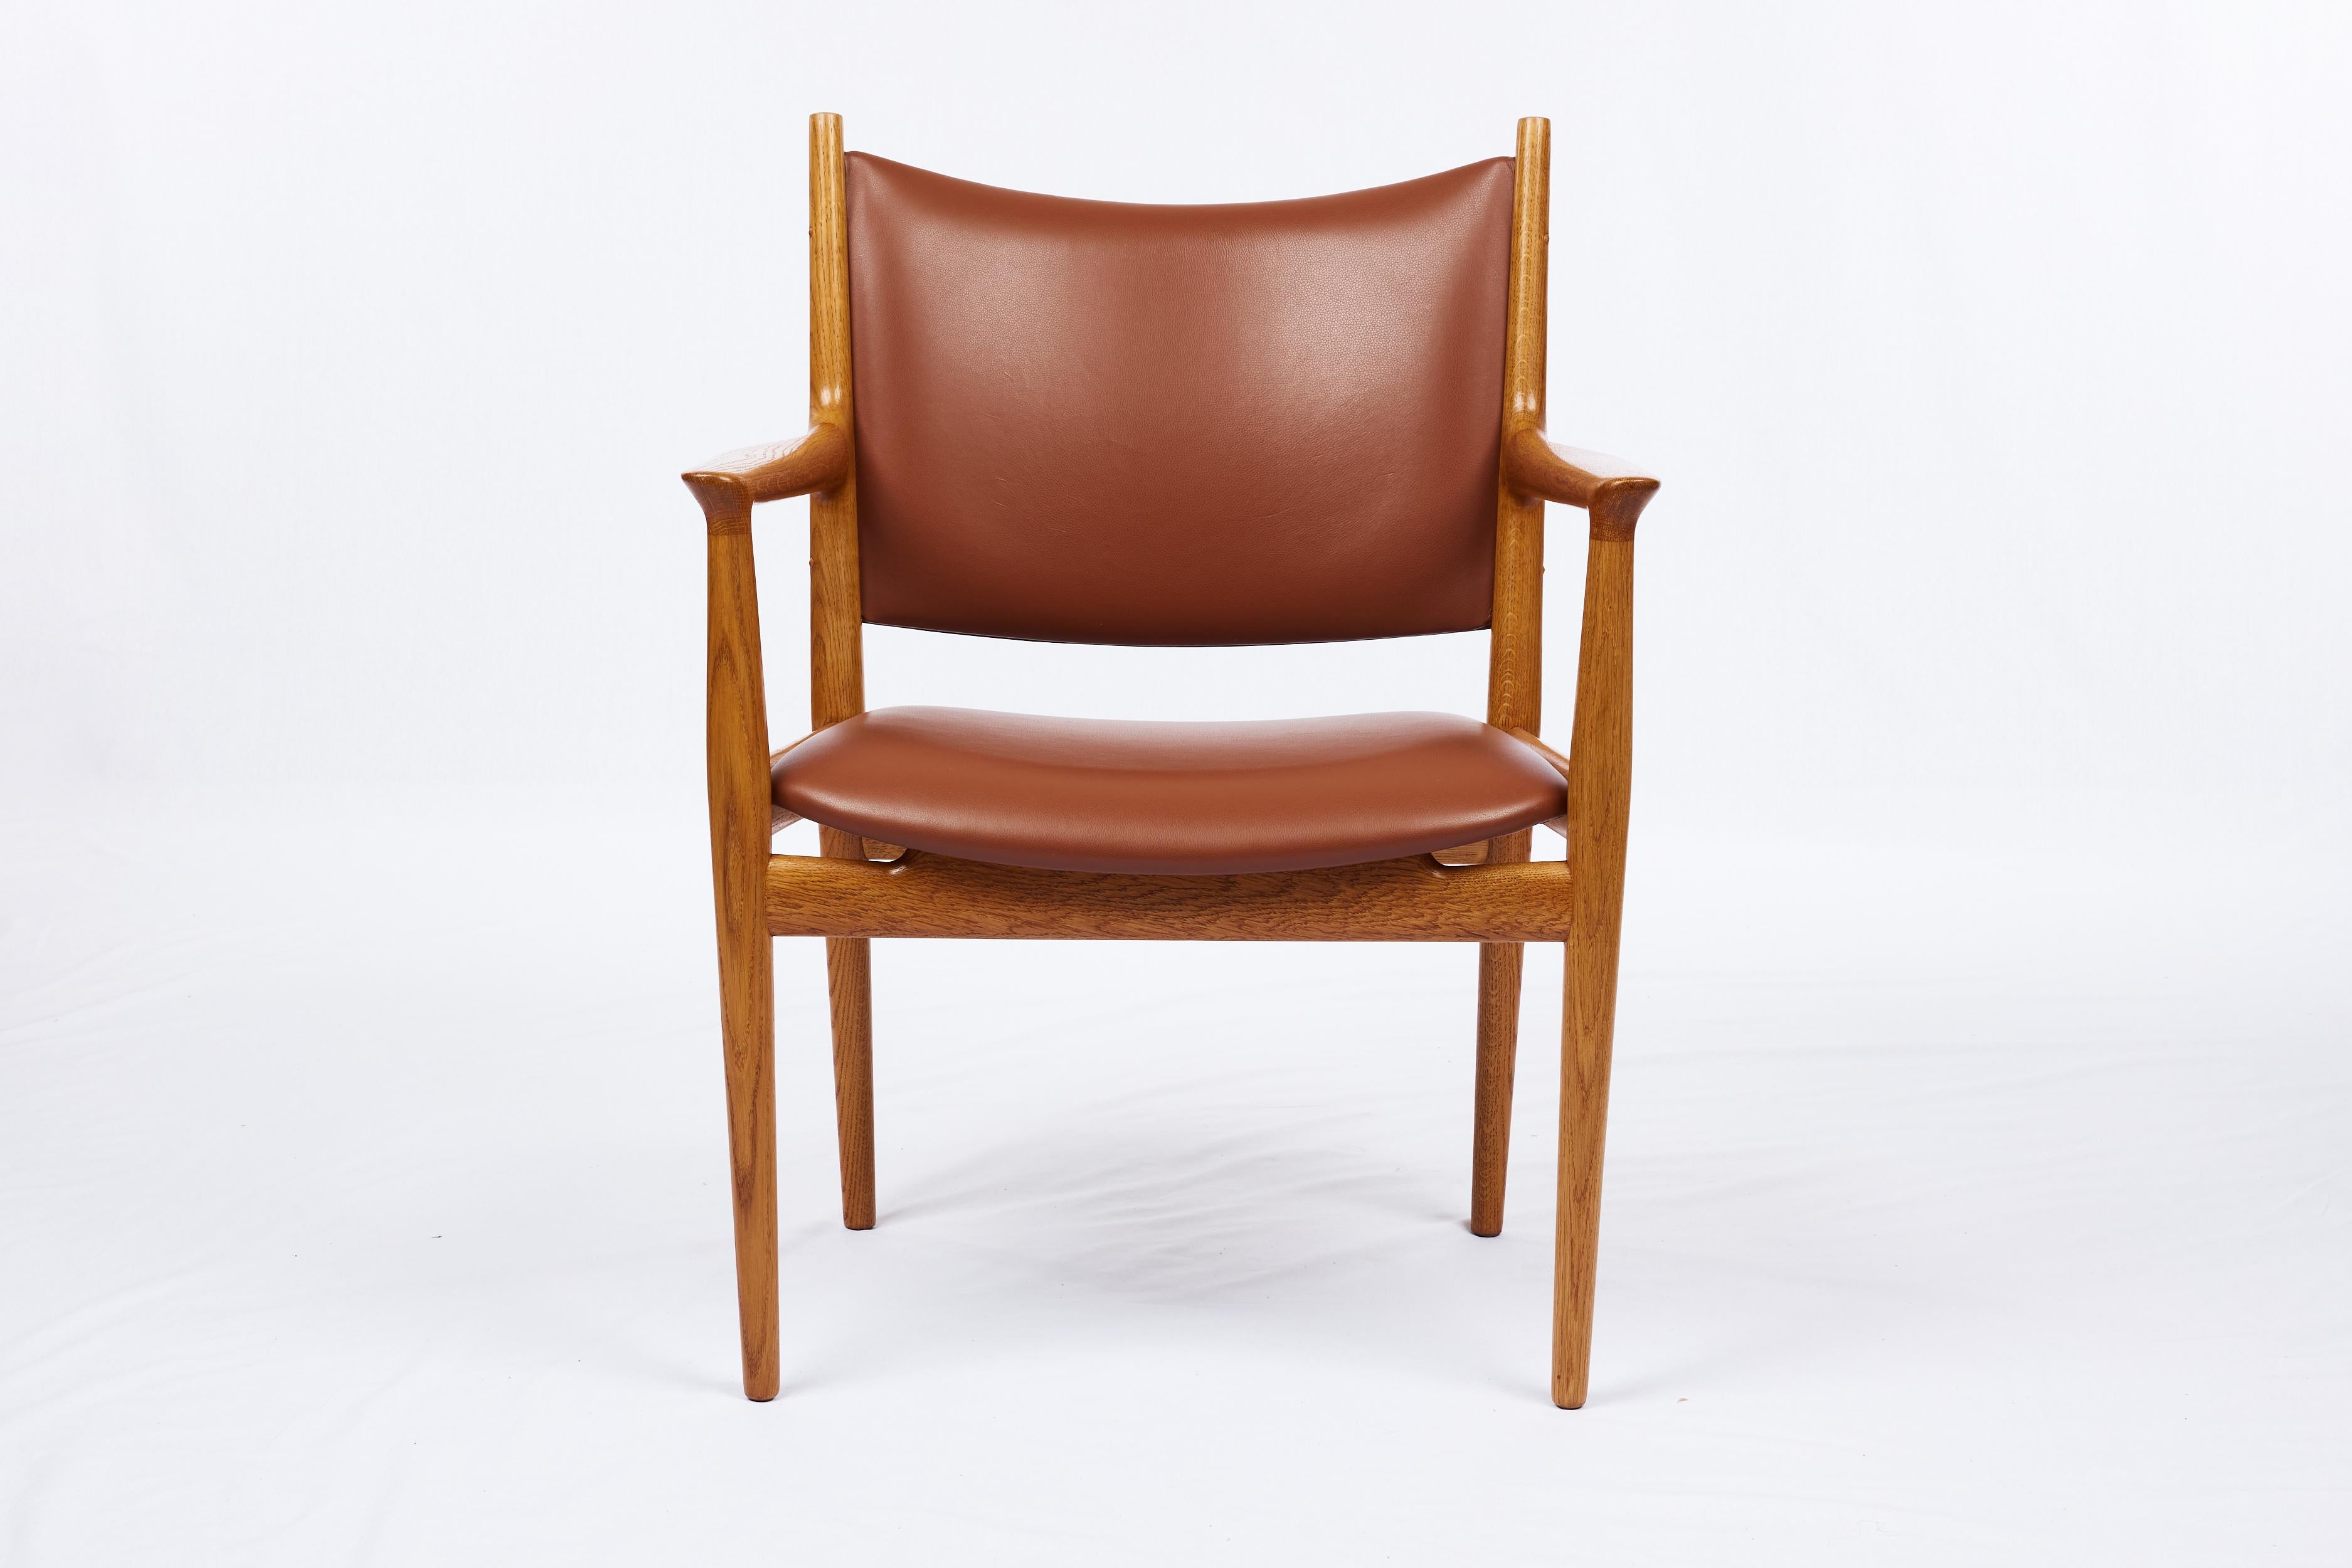 Hans Wegner JH-509 armchair. Designed in 1962. Produced by Johannes Hansen.